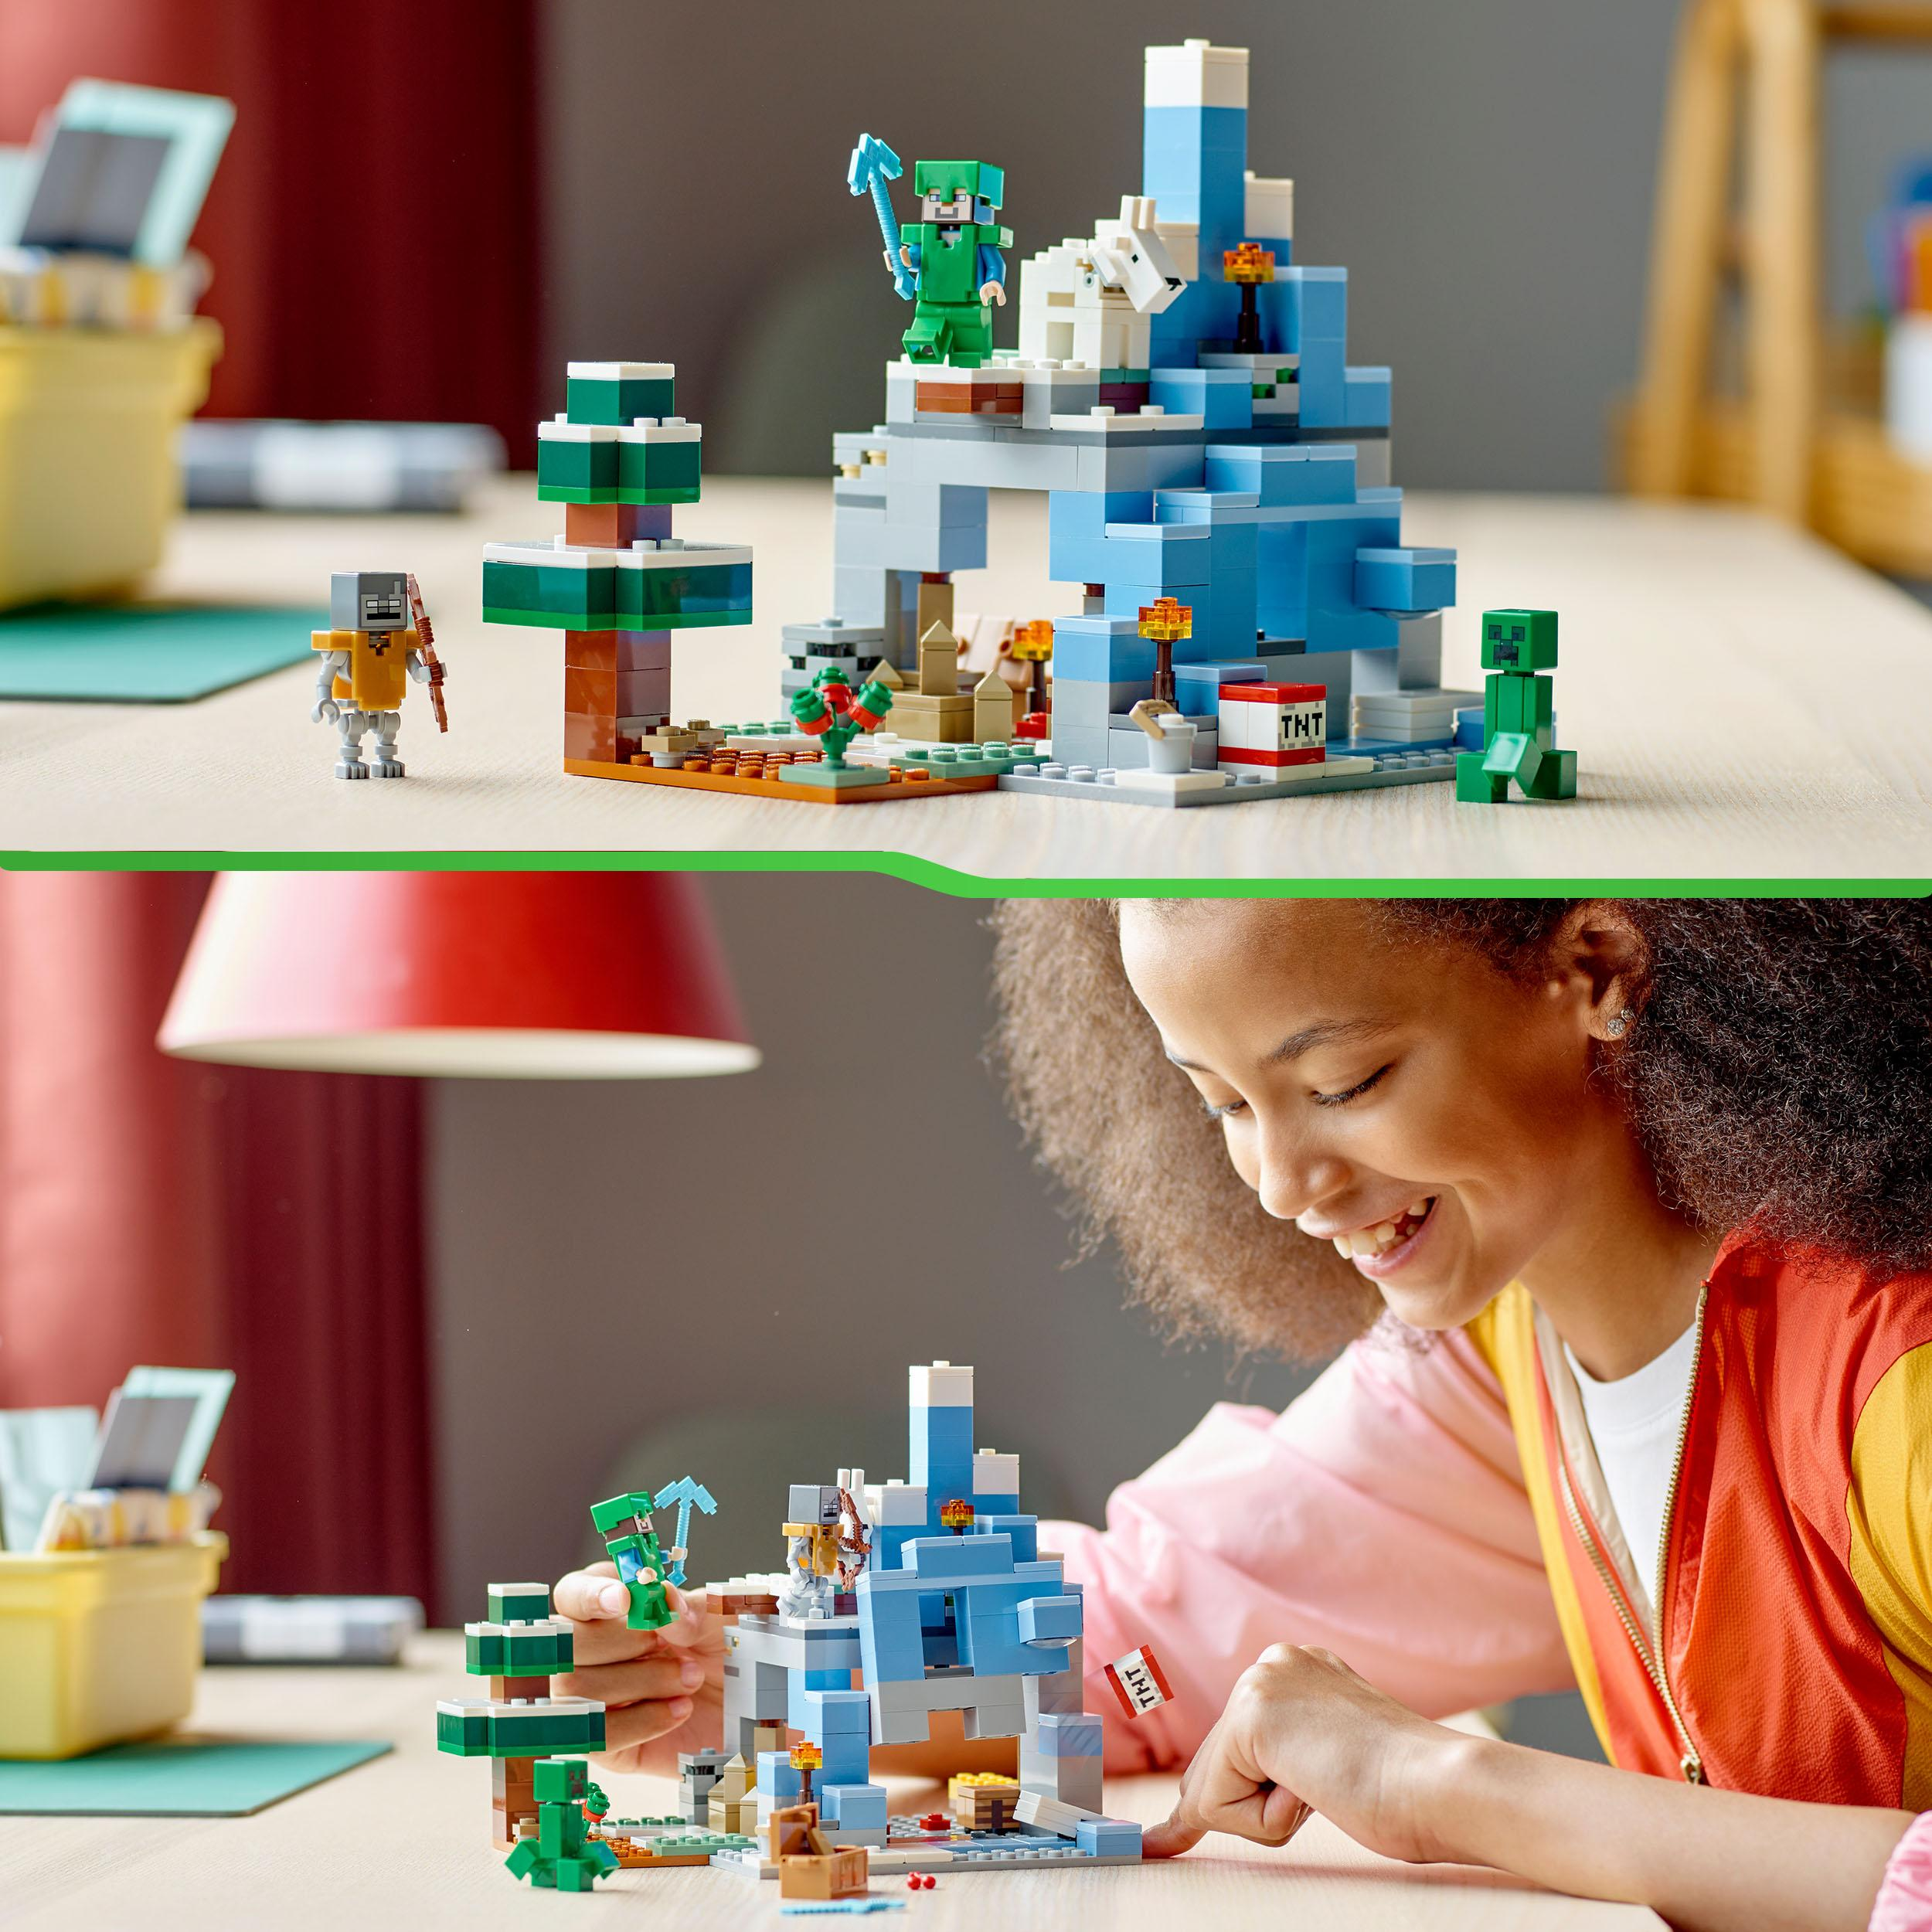 LEGO Minecraft 21243 Die Mehrfarbig Vereisten Gipfel Bausatz